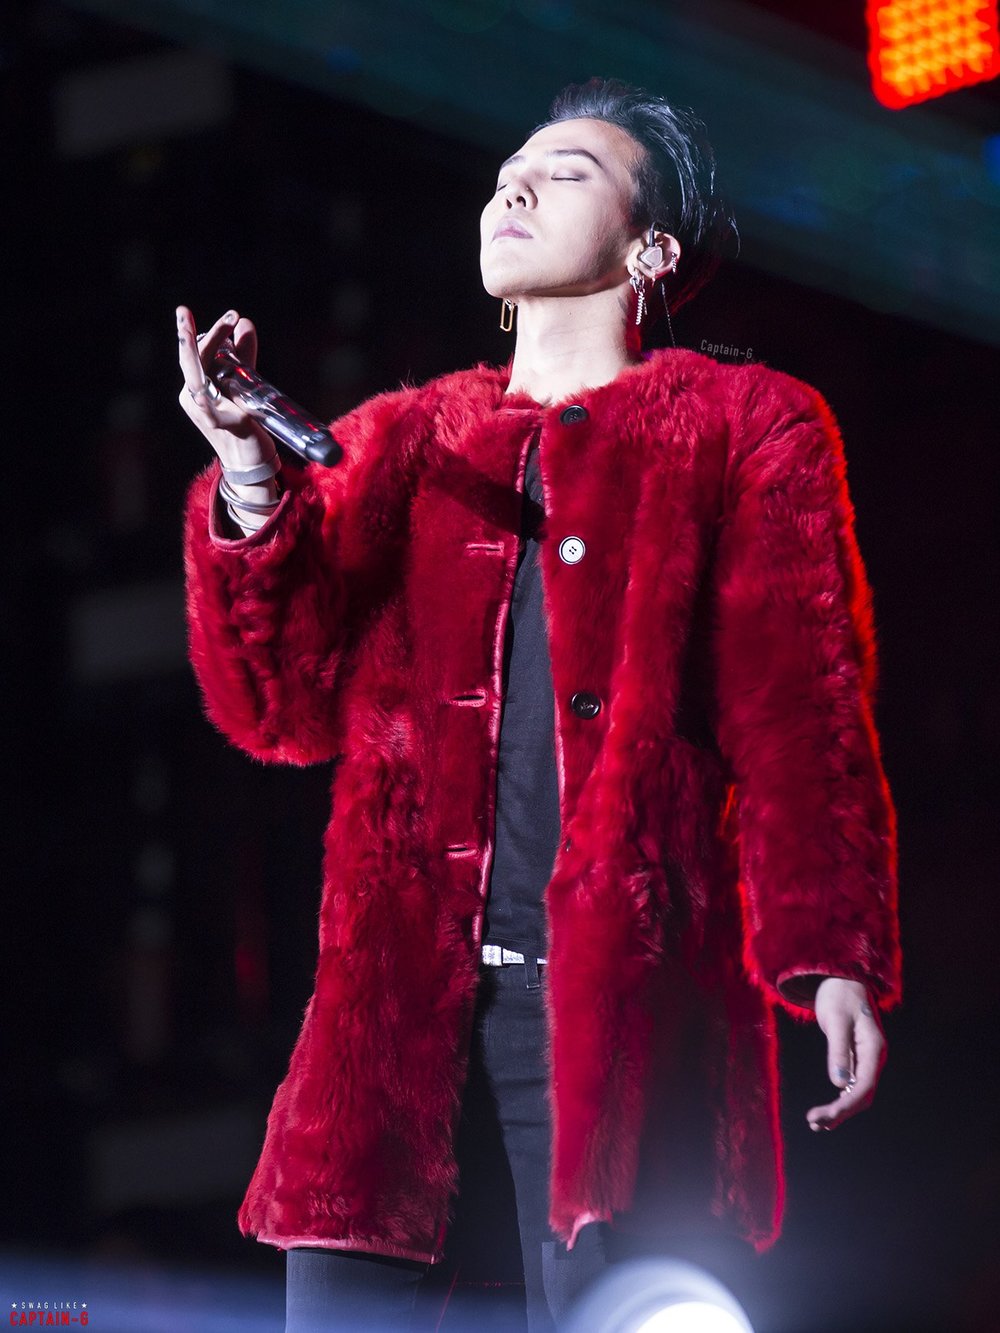  
Không gì có thể phủ nhận sức hút của G-Dragon trong âm nhạc. (Ảnh: captain-G)